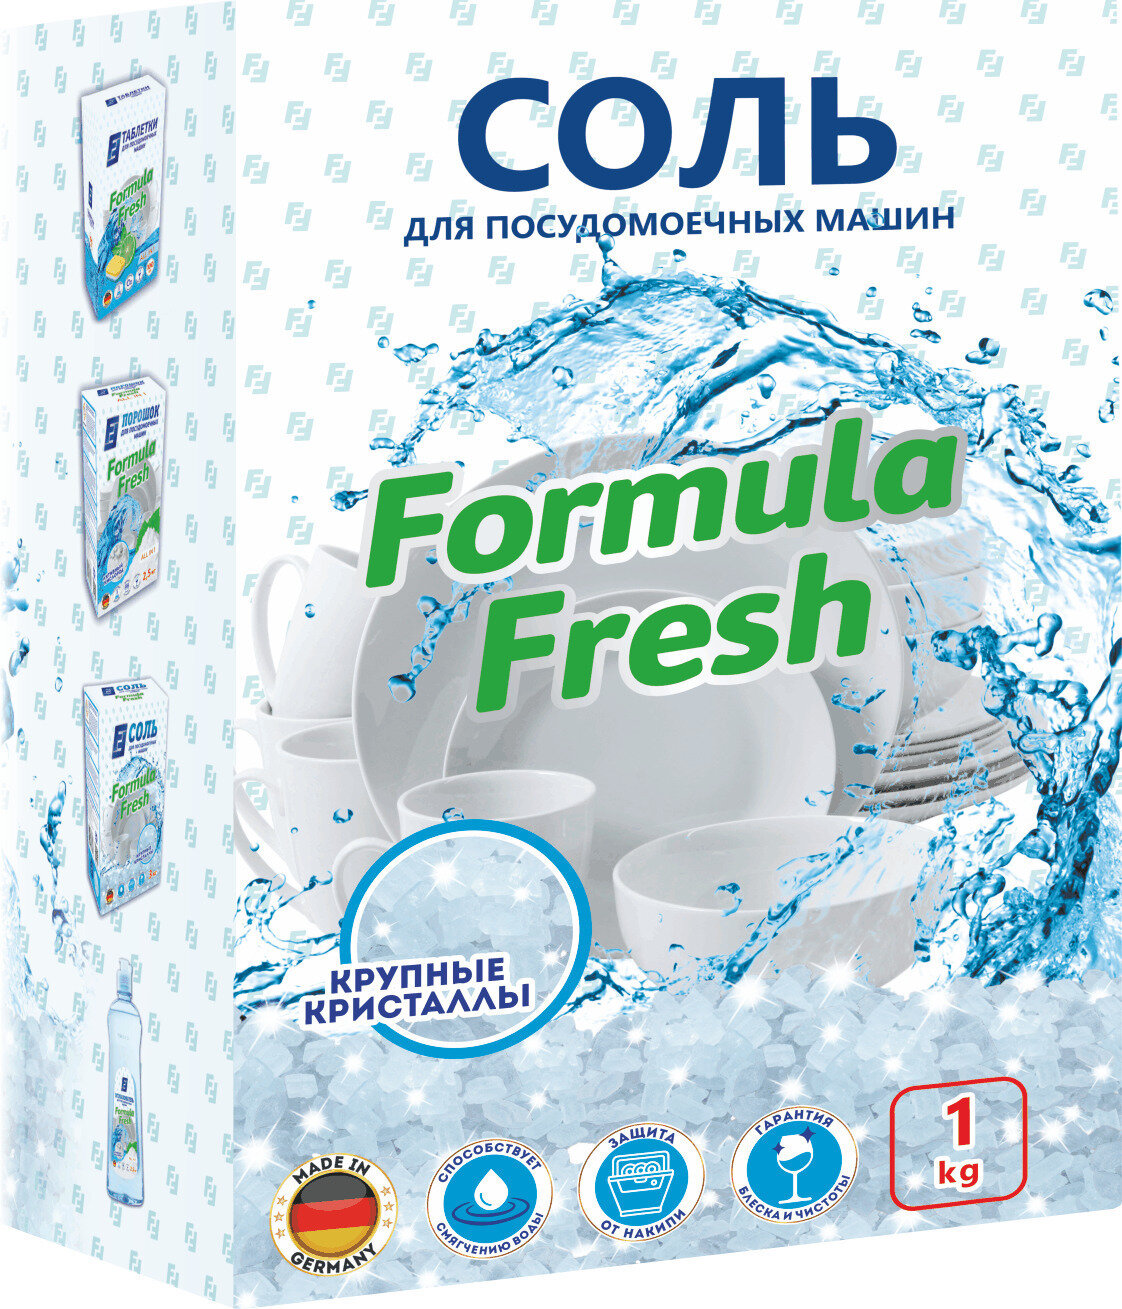 Соль Formula Fresh для посудомоечных машин с высокой степенью очистки 1 кг.